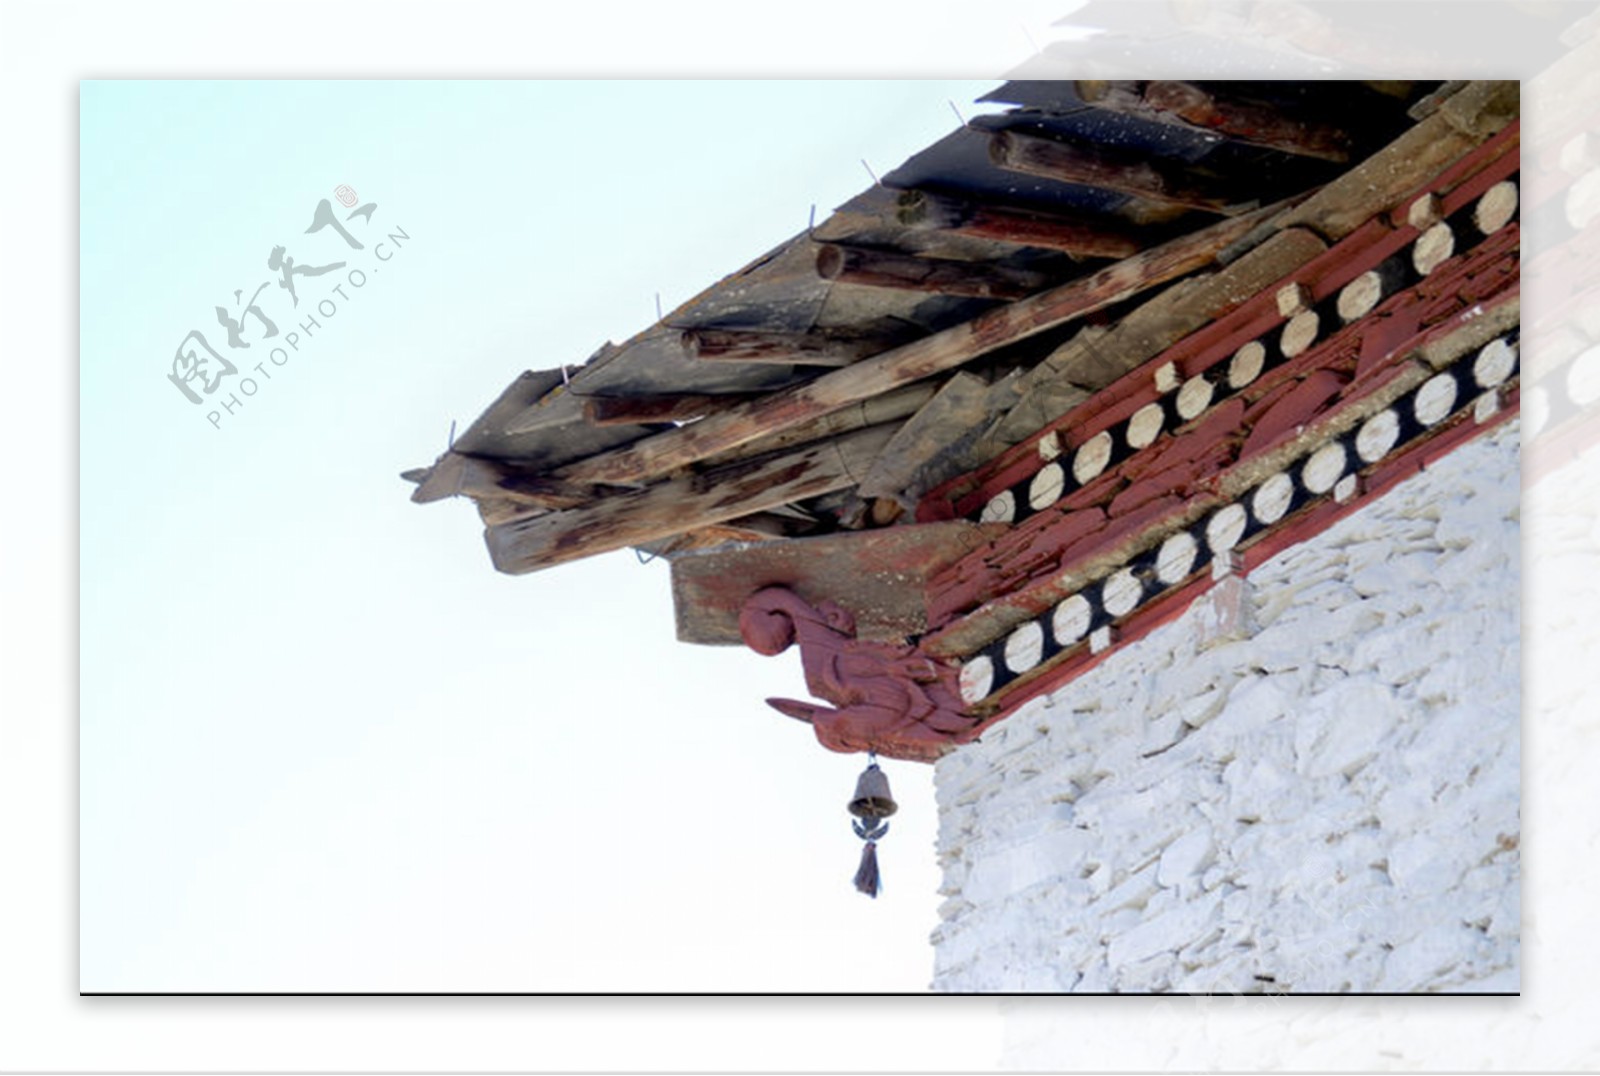 丹巴嘉绒藏族民居的屋檐